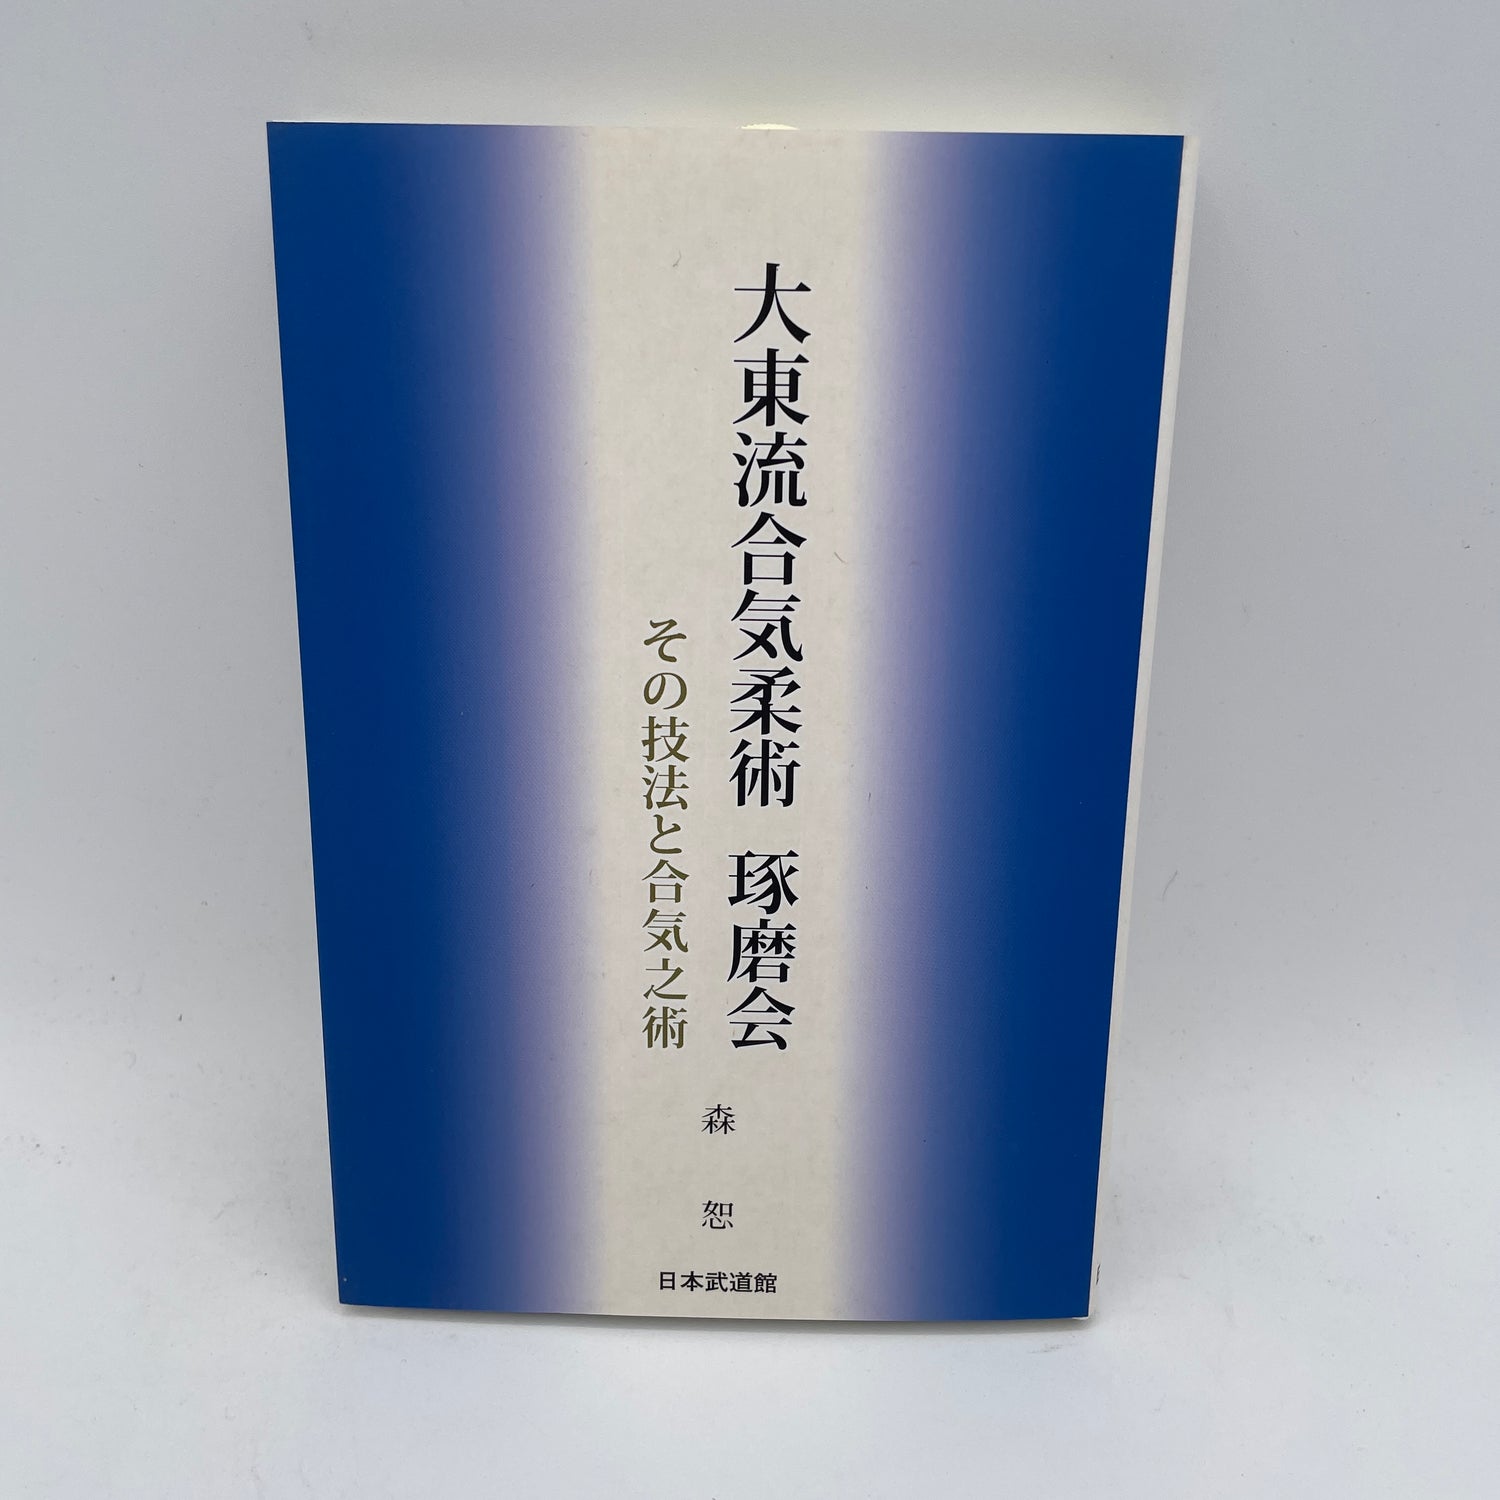 Daito Ryu Aikijujutsu Takumakai: Secrets & Aiki Techniques Book by Hakaru Mori (Preowned)